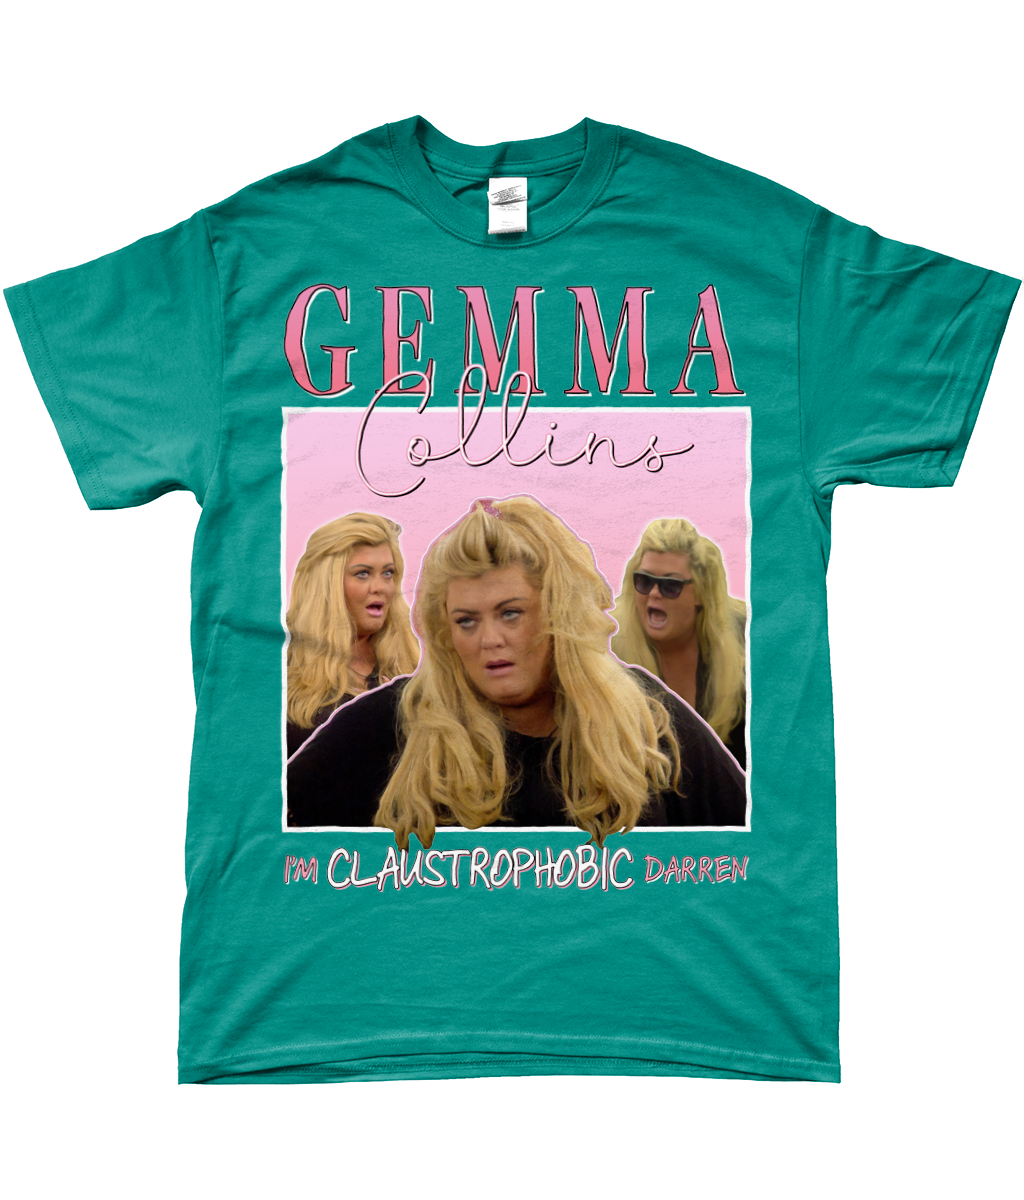 Gemma Collins I'm Claustrophobic Darren Big Brother UK Unisex Crewneck T-shirt